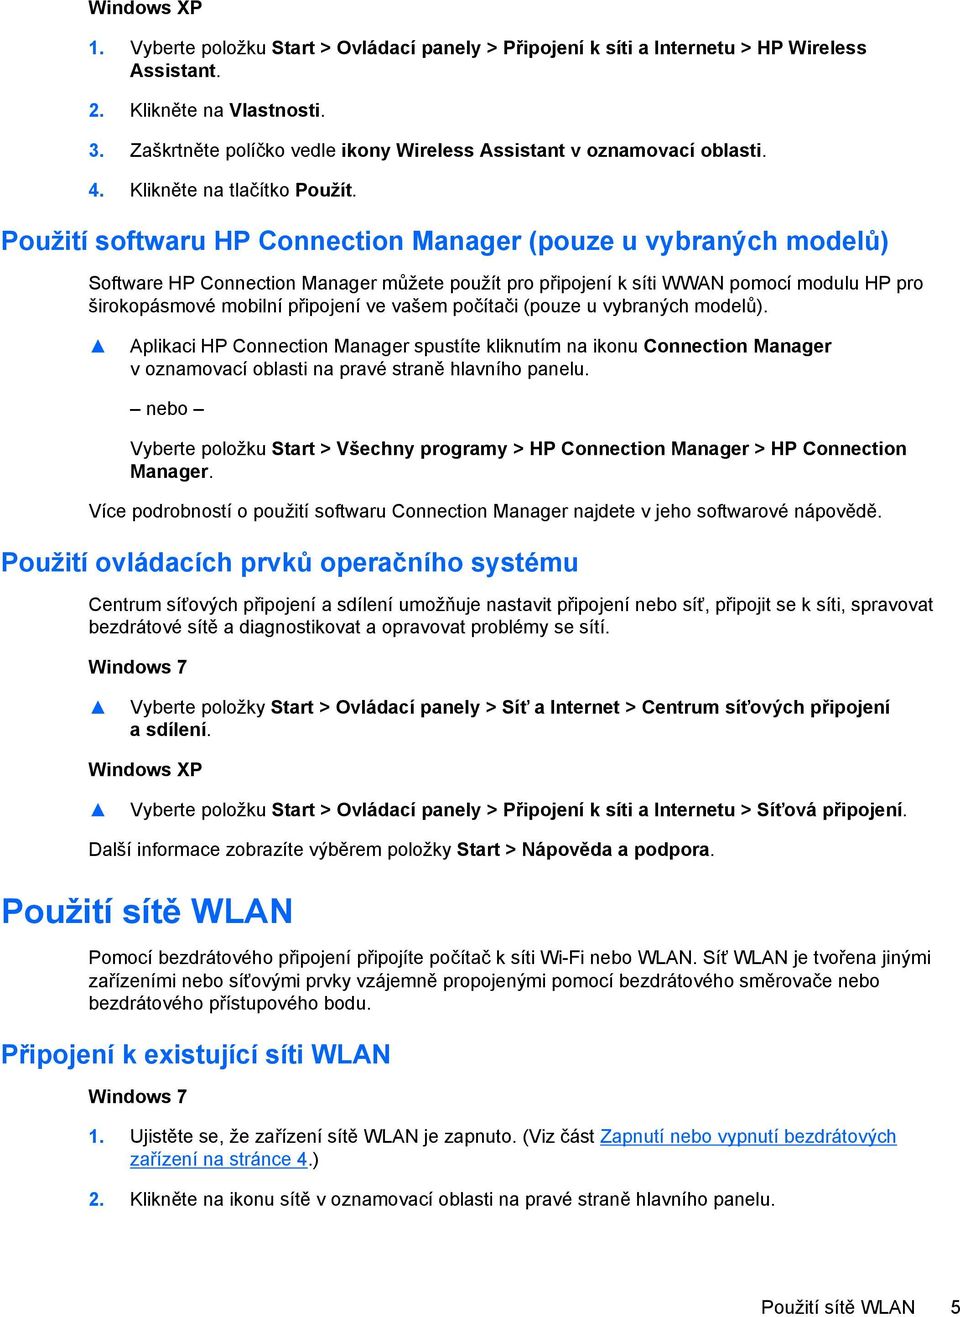 Použití softwaru HP Connection Manager (pouze u vybraných modelů) Software HP Connection Manager můžete použít pro připojení k síti WWAN pomocí modulu HP pro širokopásmové mobilní připojení ve vašem